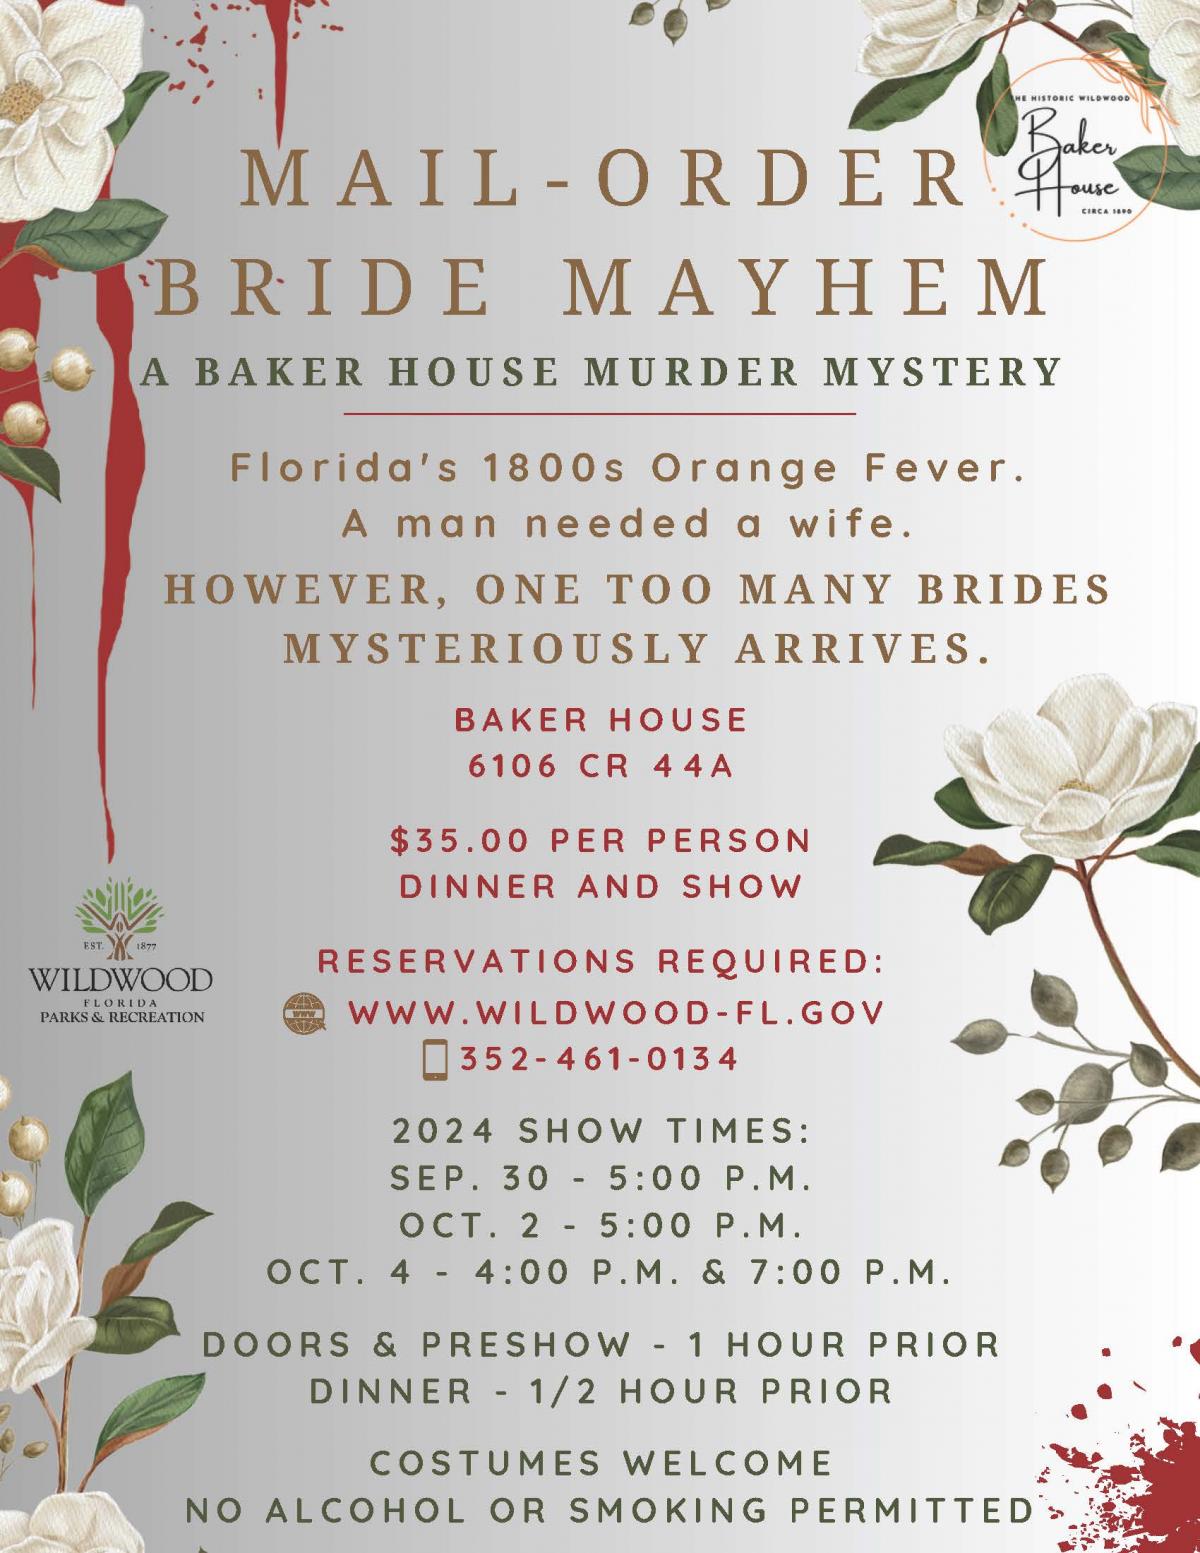 Murder Mystery Mail Order Bride Mayhem, Baker House, September 30, October 2, 4, 2024